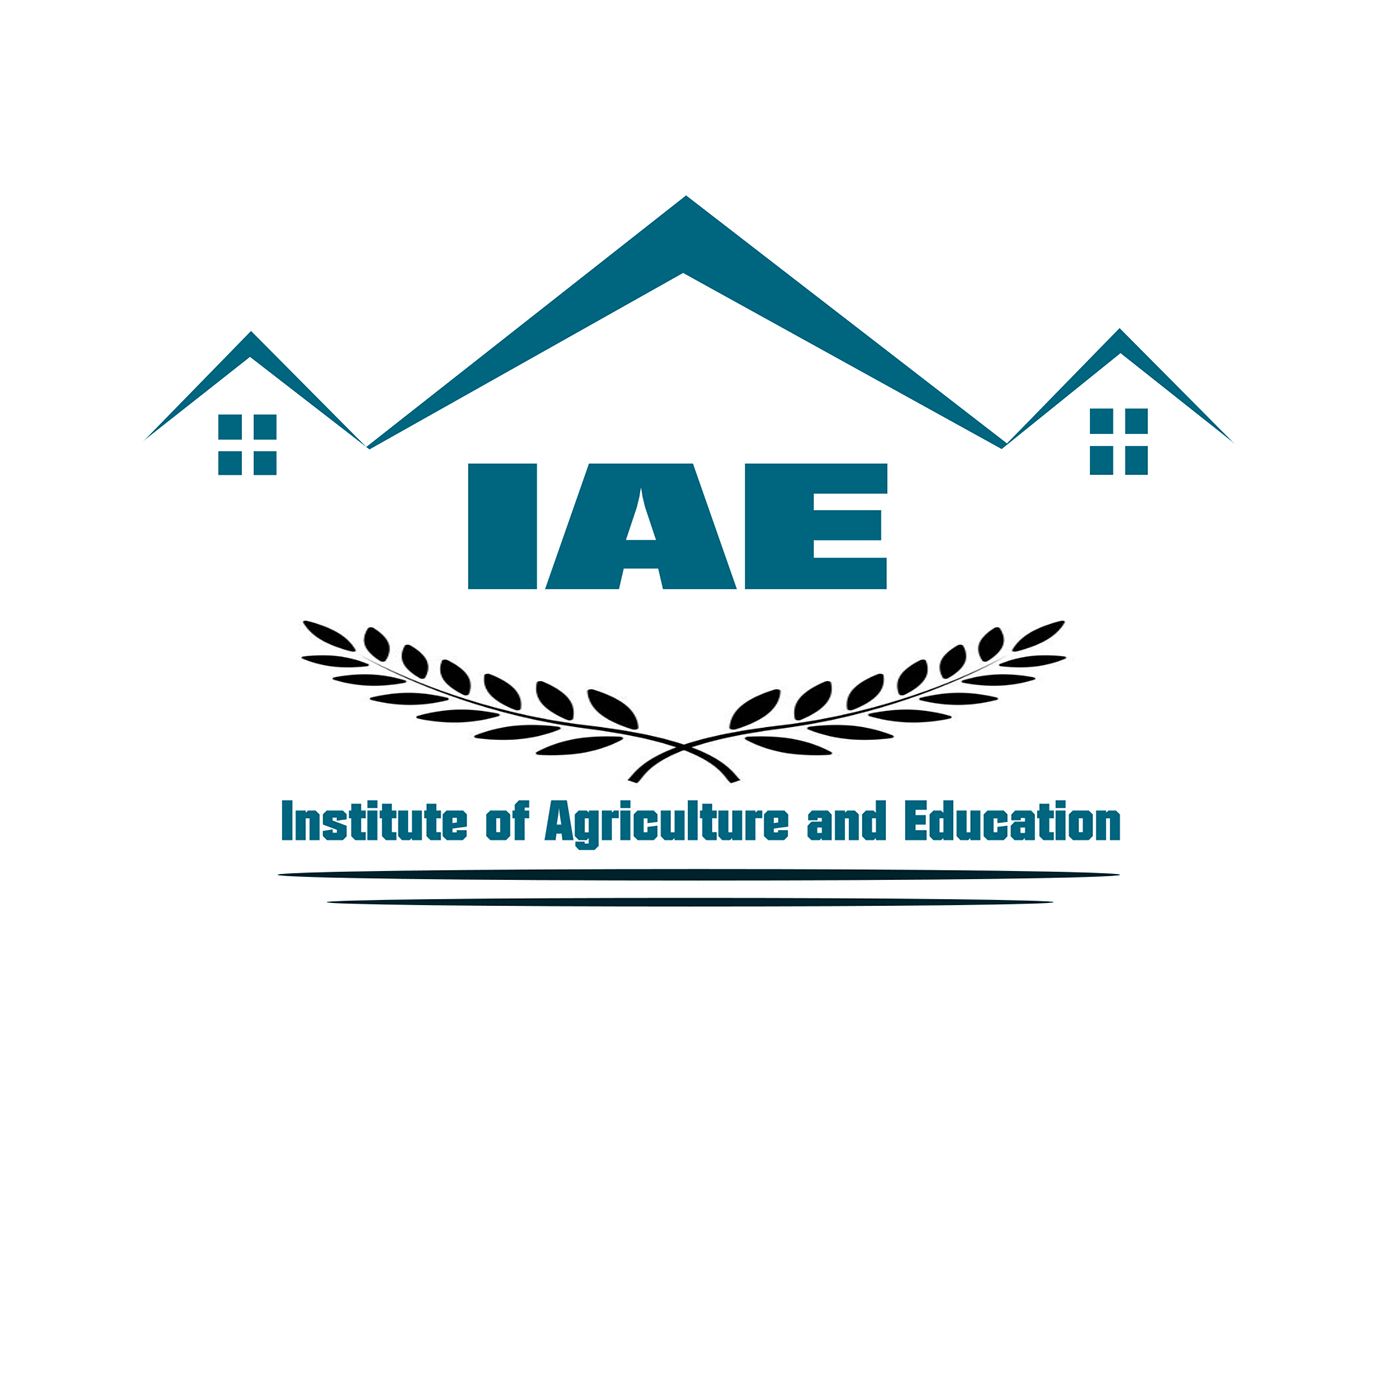 Conception designer Education Illustrateur logo agripur logo education Logo of agricultural vector